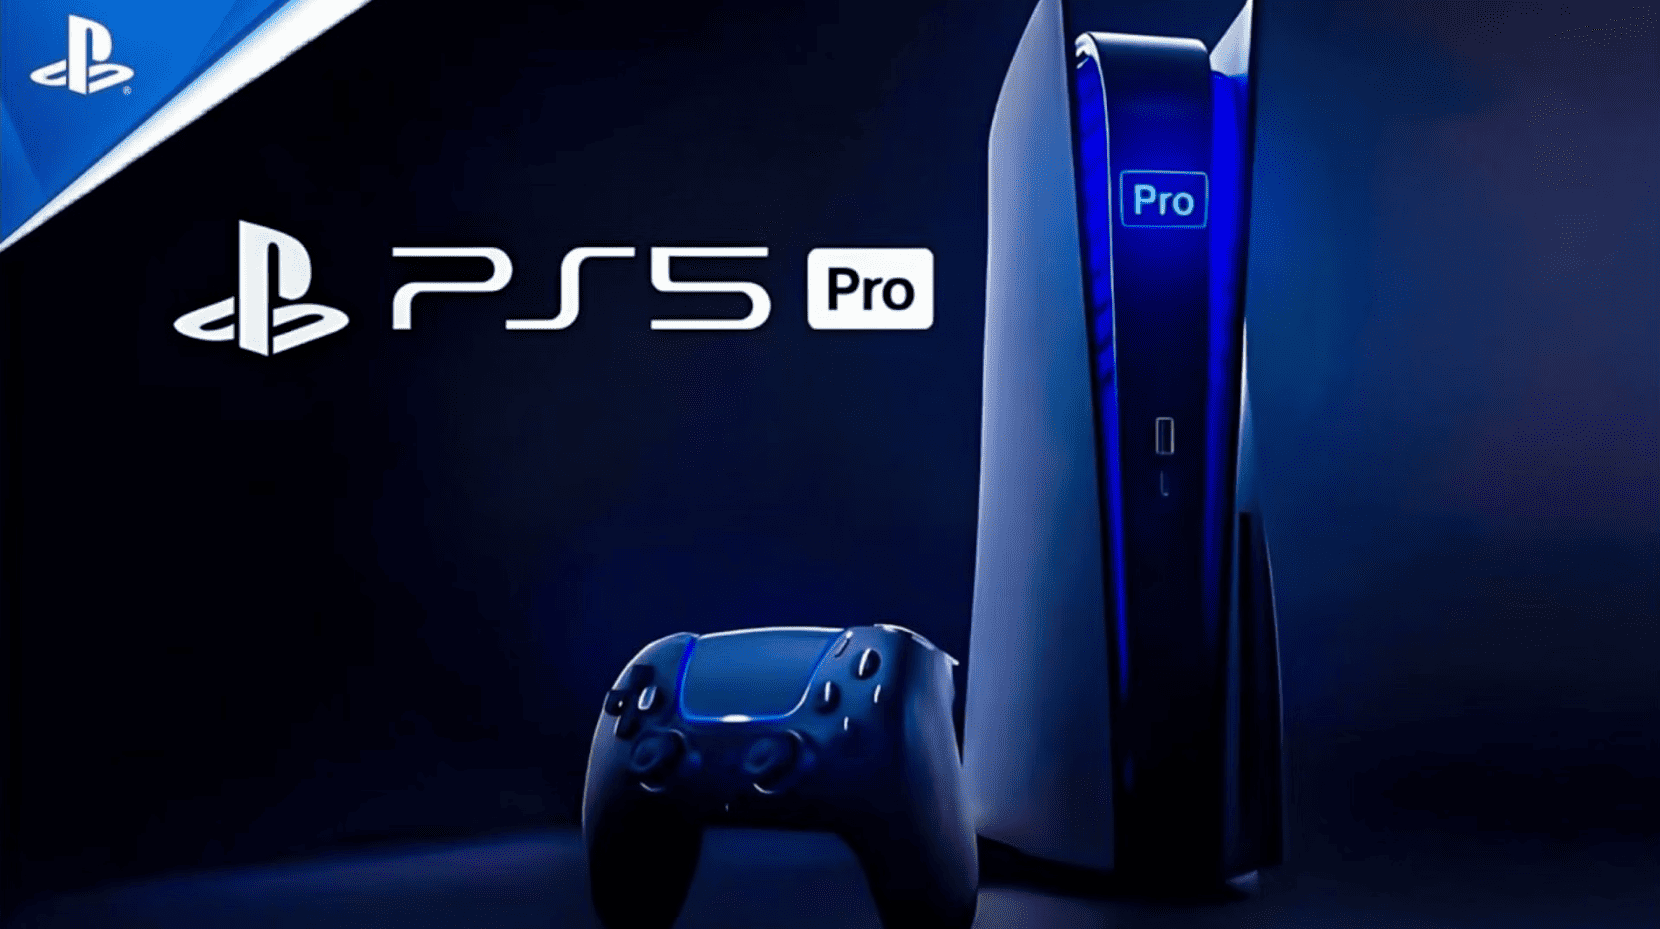 Existência do PS5 Pro pode ter sido desmentida